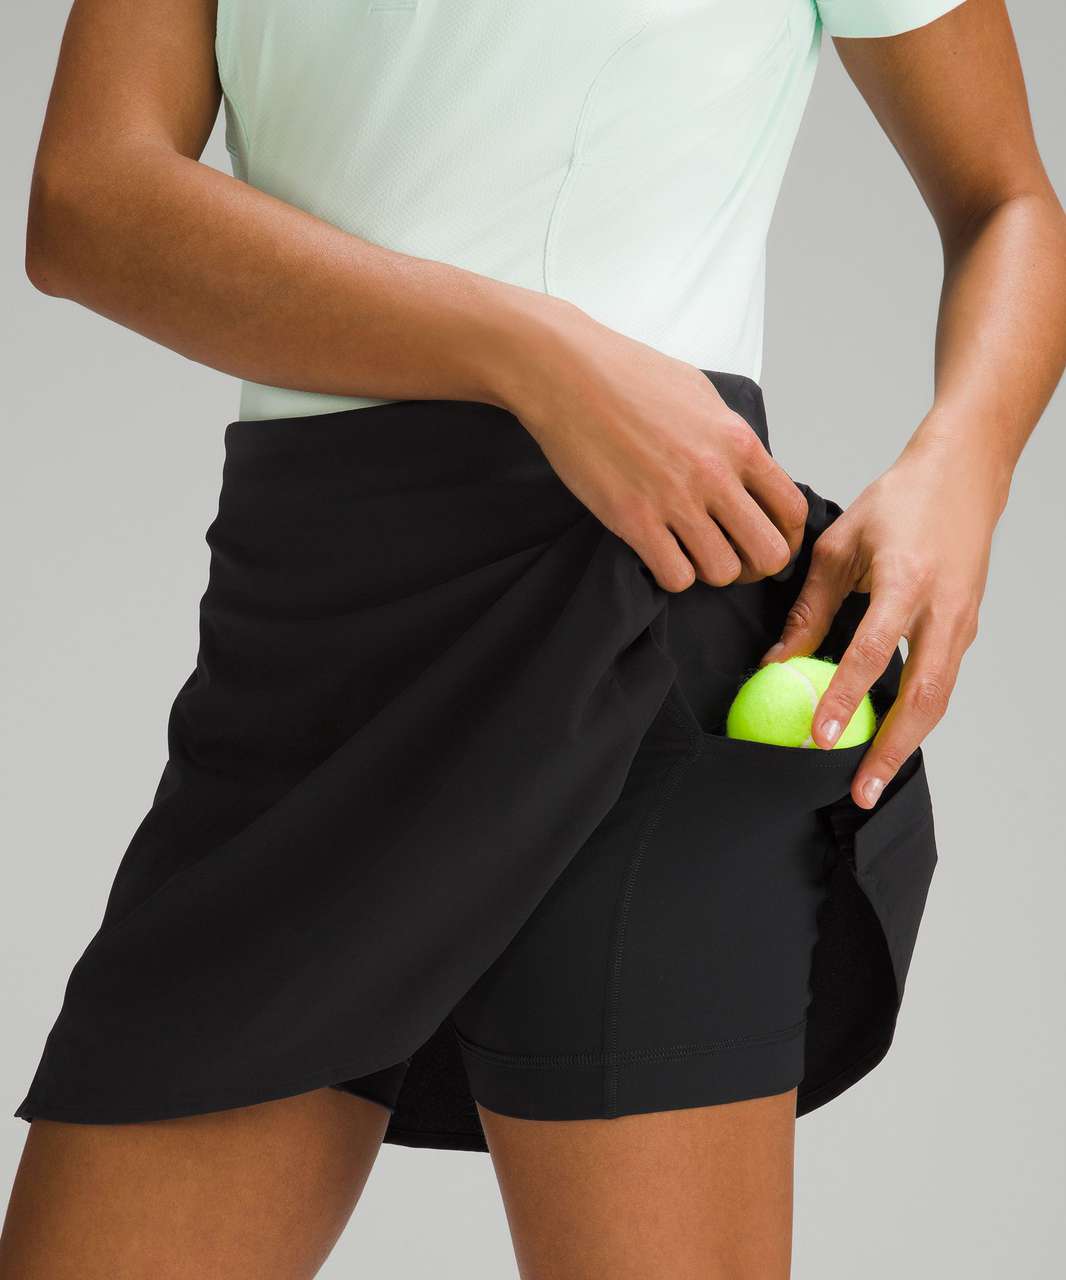 Lululemon Peek Pleat High-Rise Tennis Skirt - Black